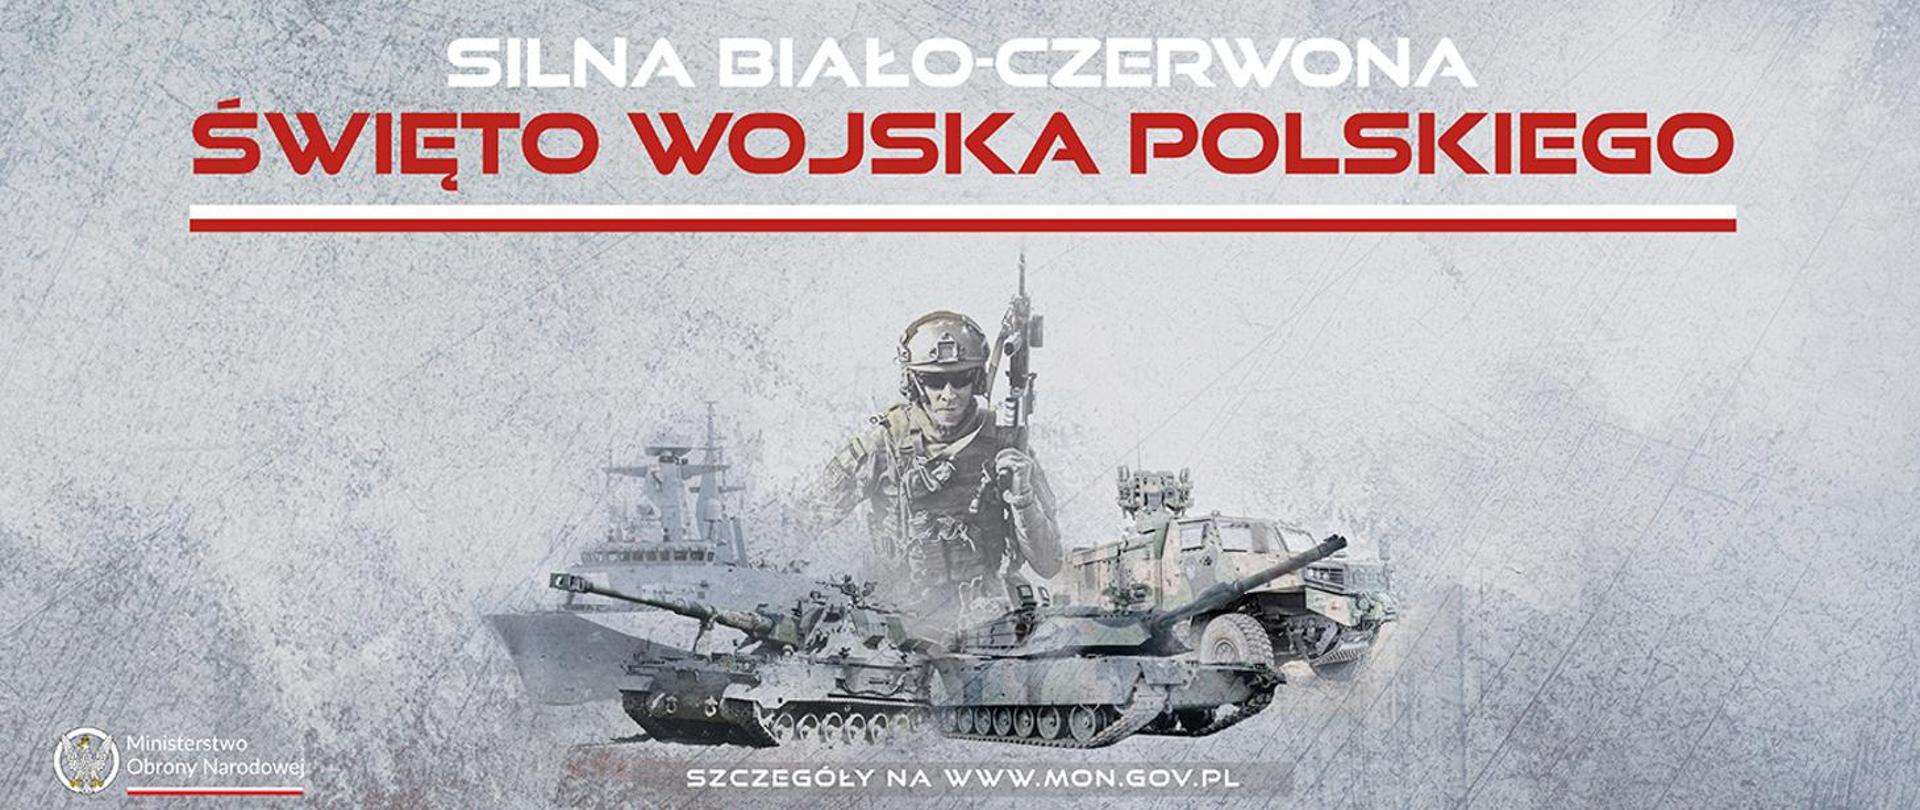 Święto Wojska Polskiego. Zdjęcie czołgu, okrętu, pojazdów wojskowych. Na ich tle napis "Silna Biało-Czerwona"